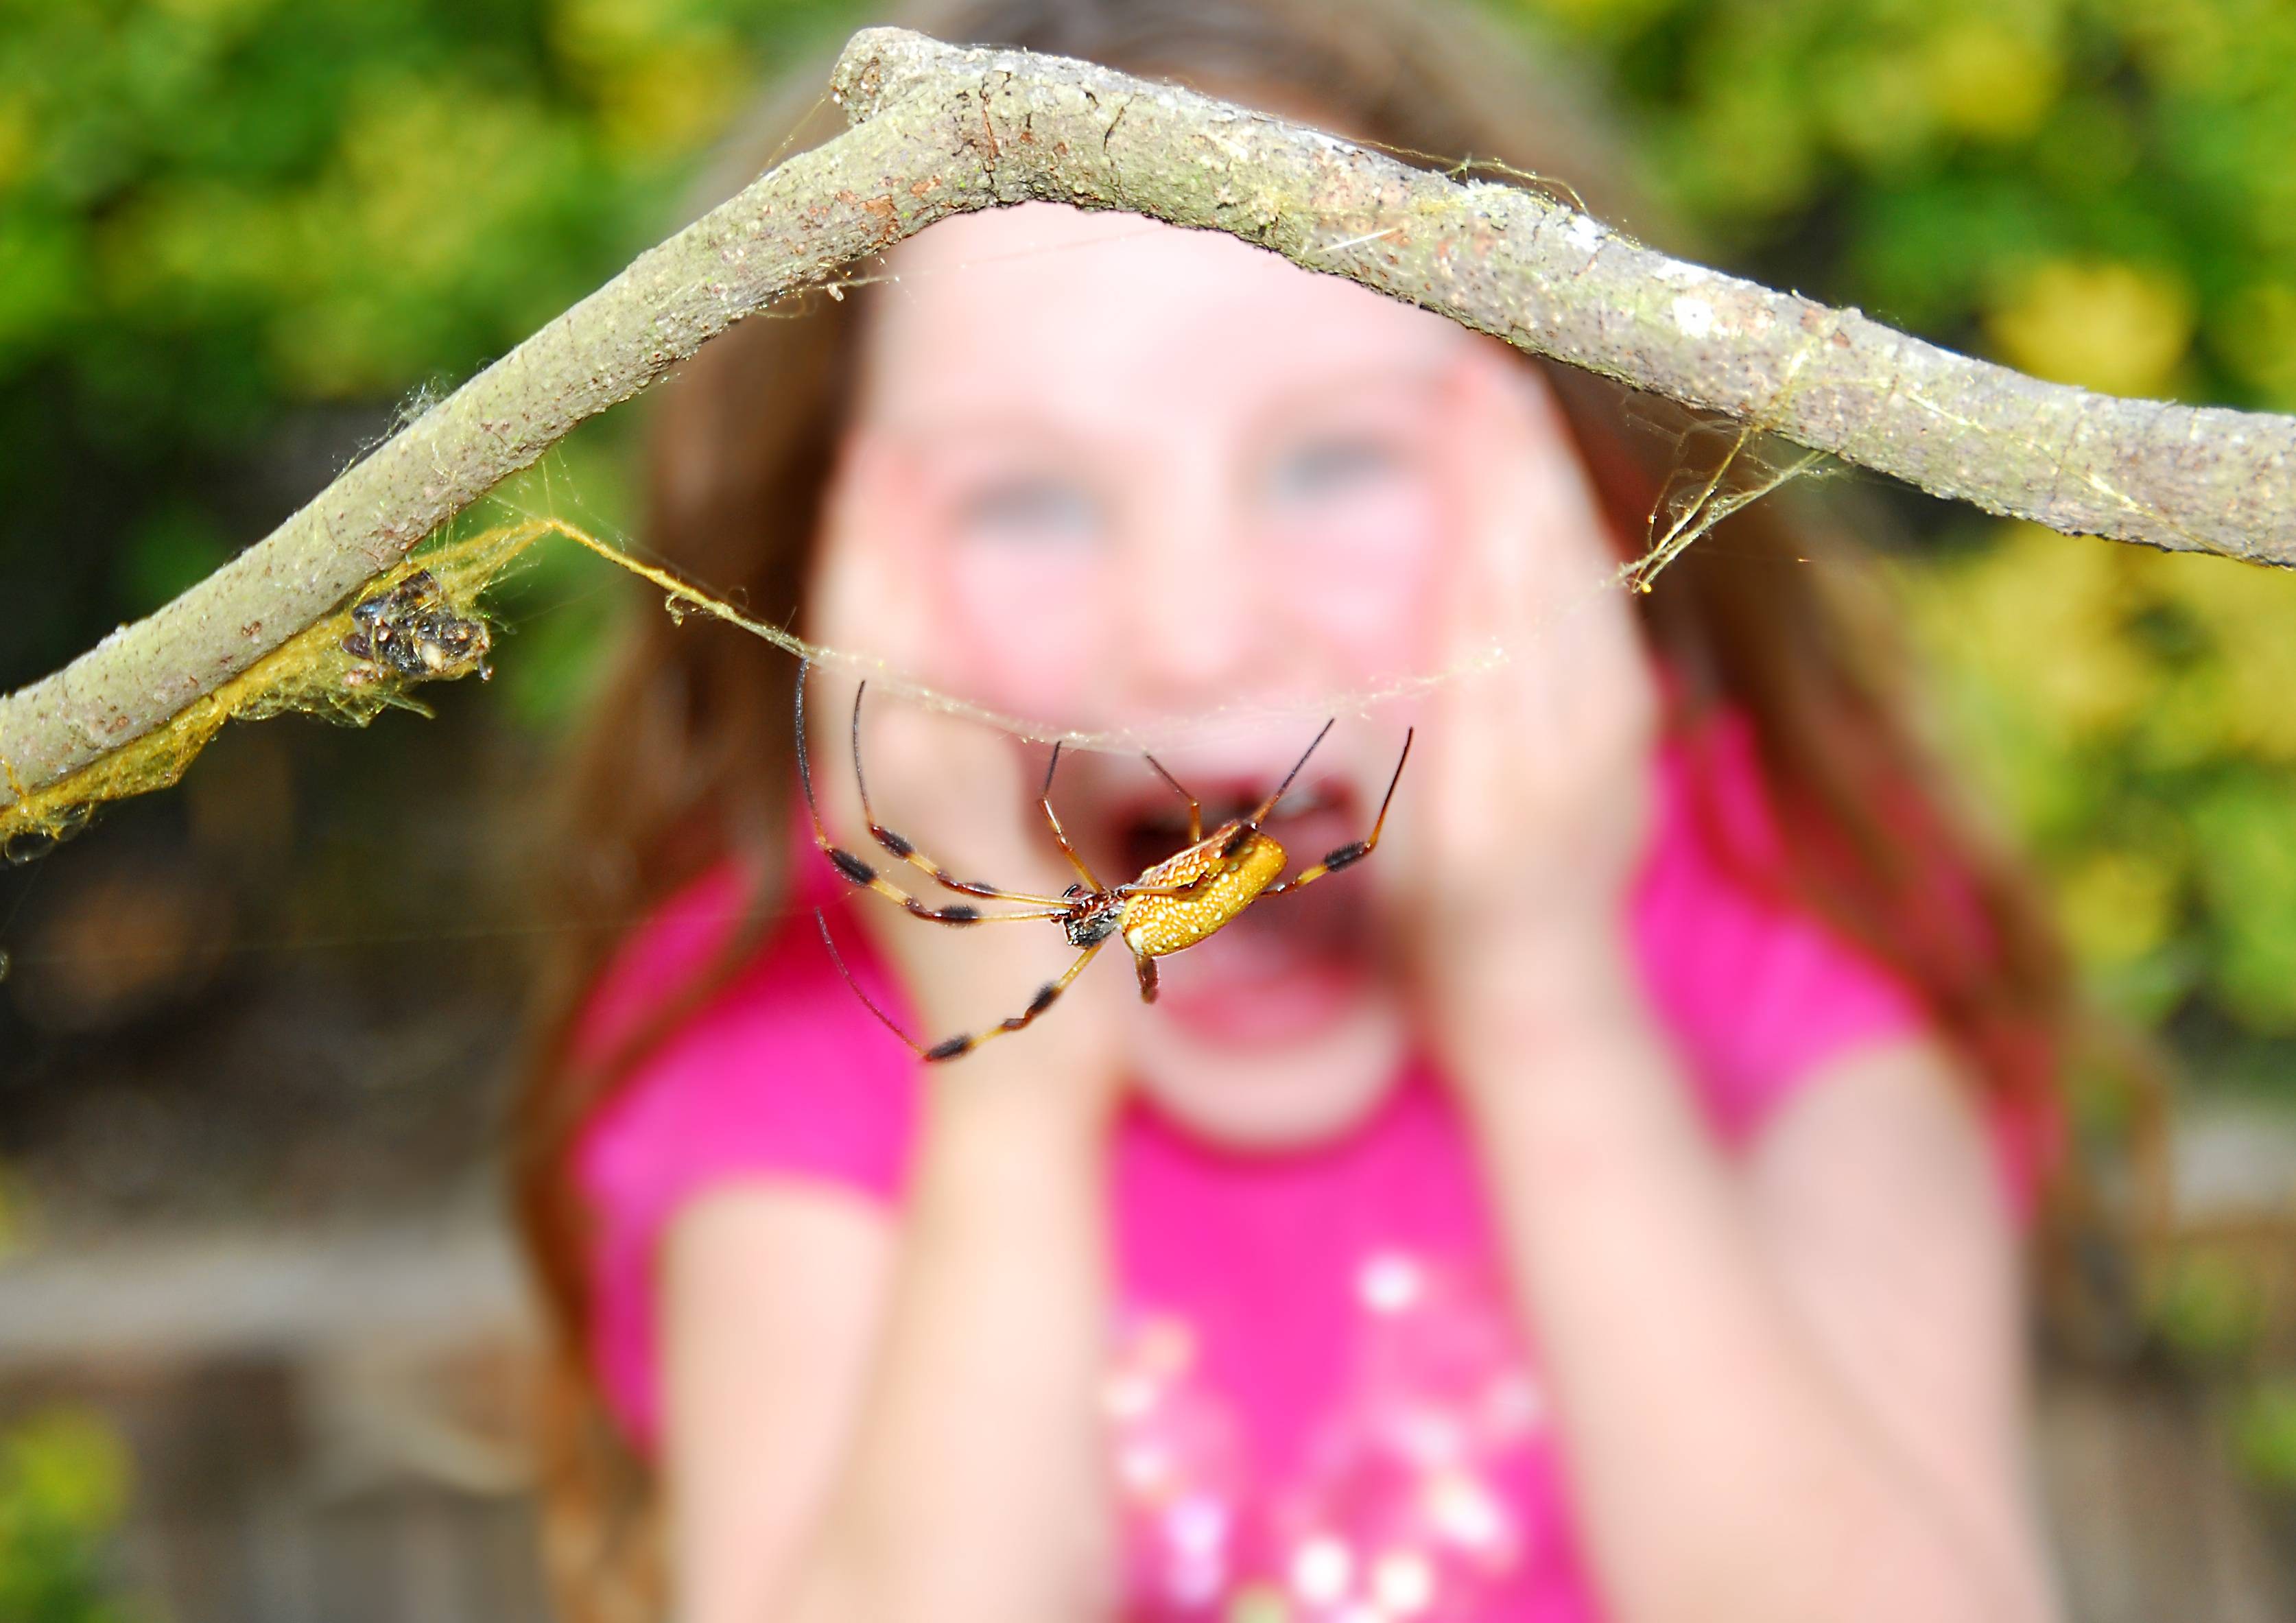 Ребенок панически боится насекомых до истерики - что делать?